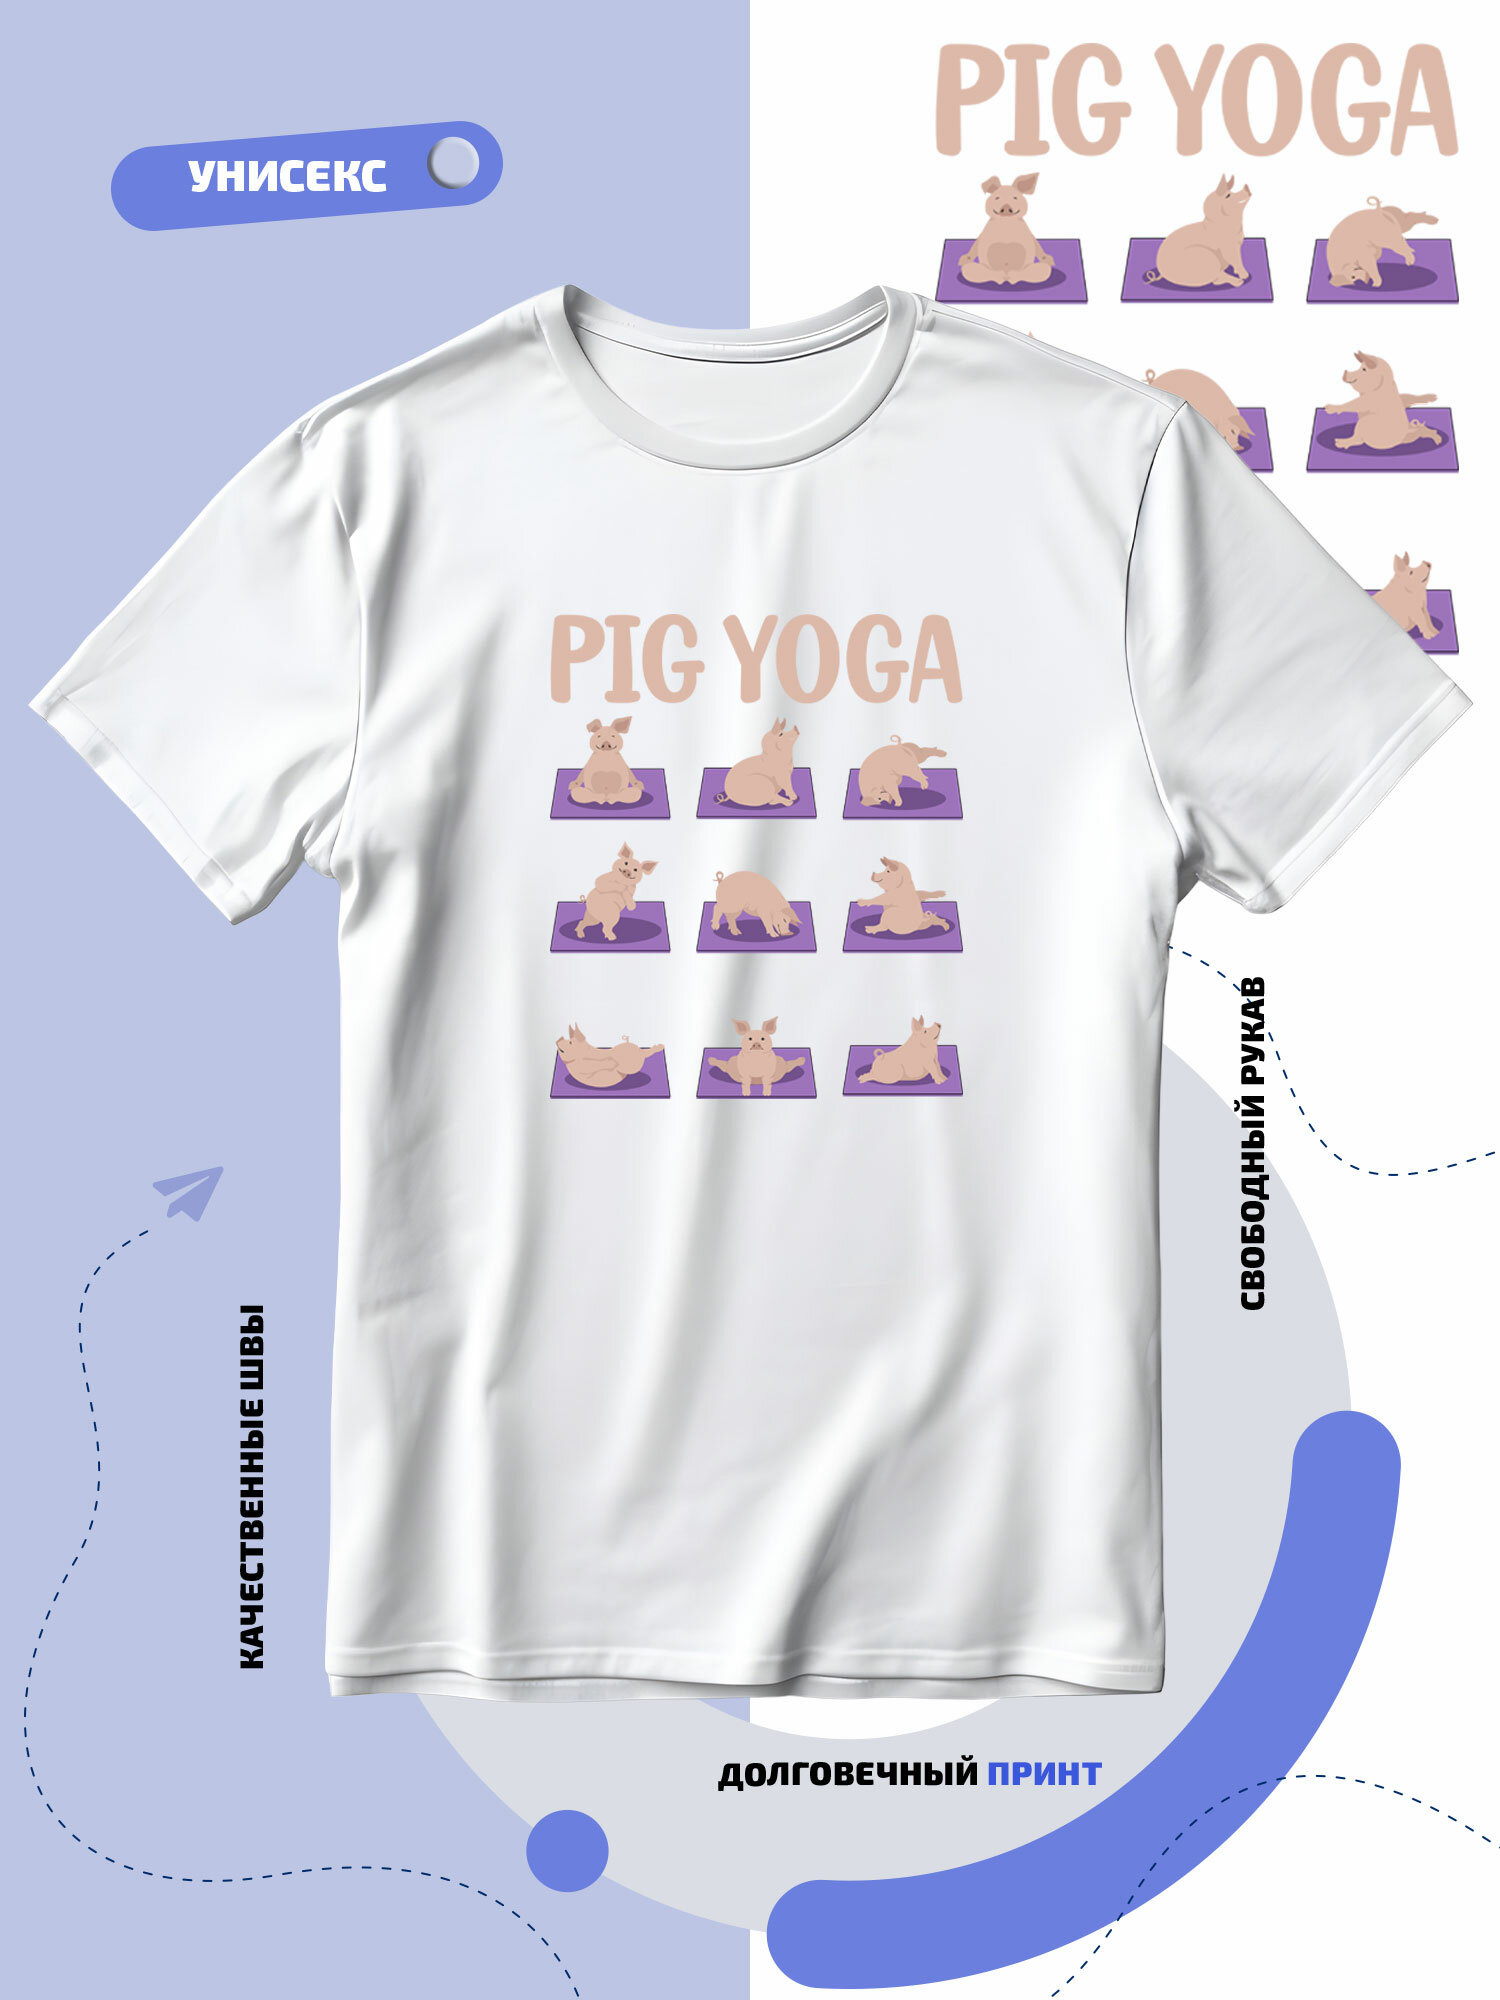 Футболка SMAIL-P pig yoga с занимающимися поросятками